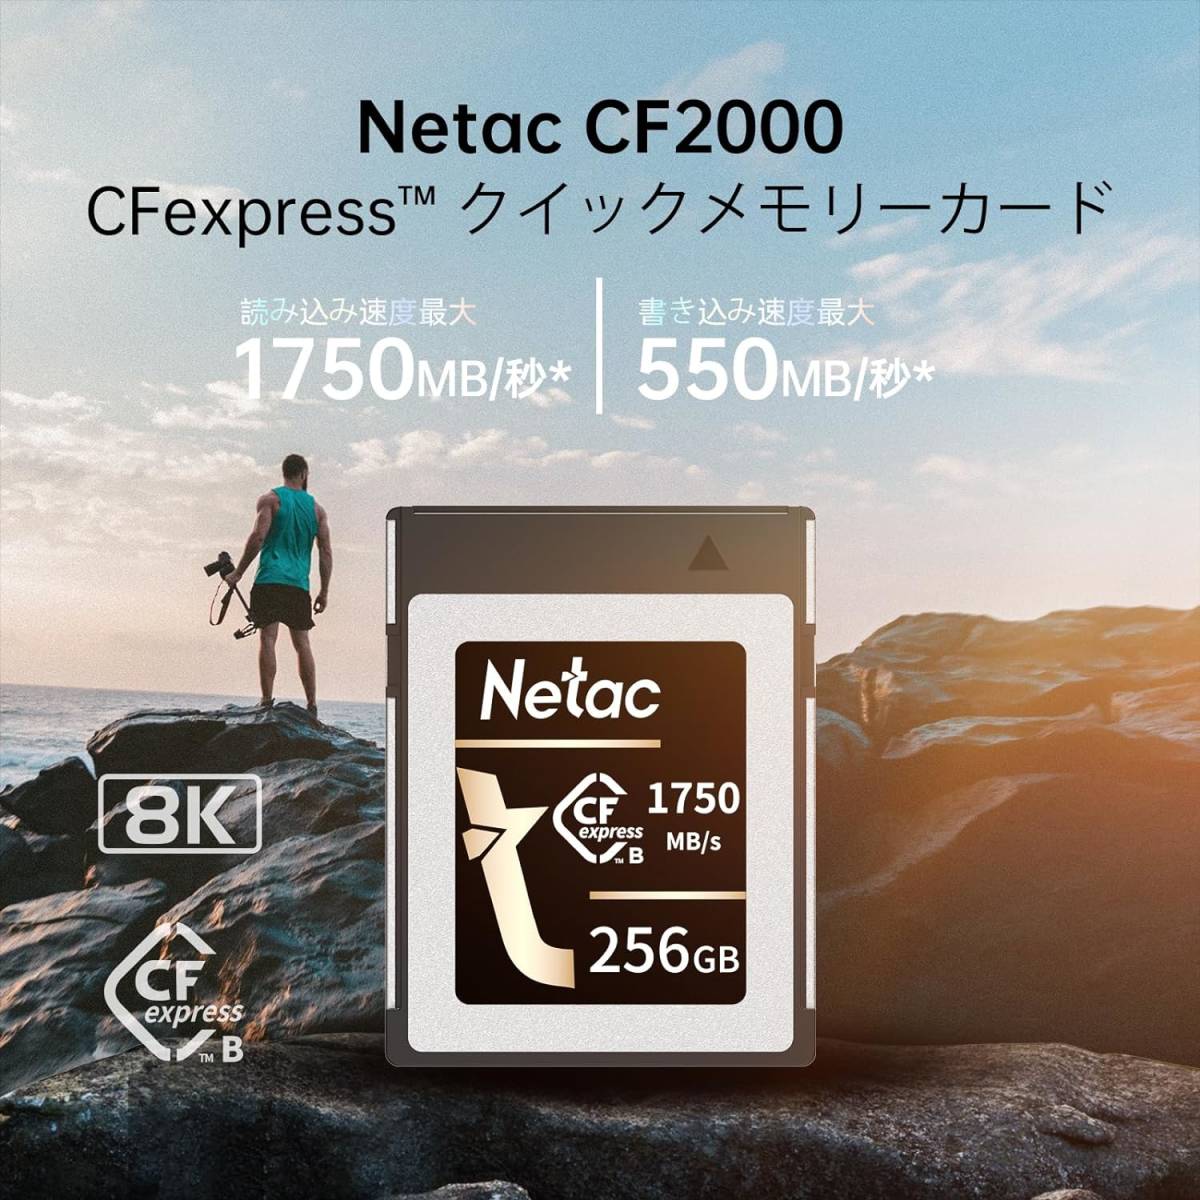  бесплатная доставка *Netac CF карта CFexpress Type B 256GB считывание .. максимальный 1750MB/ секунд 8K видеозапись соответствует высокая скорость продолжение фотосъемка . путешествие фотография для 